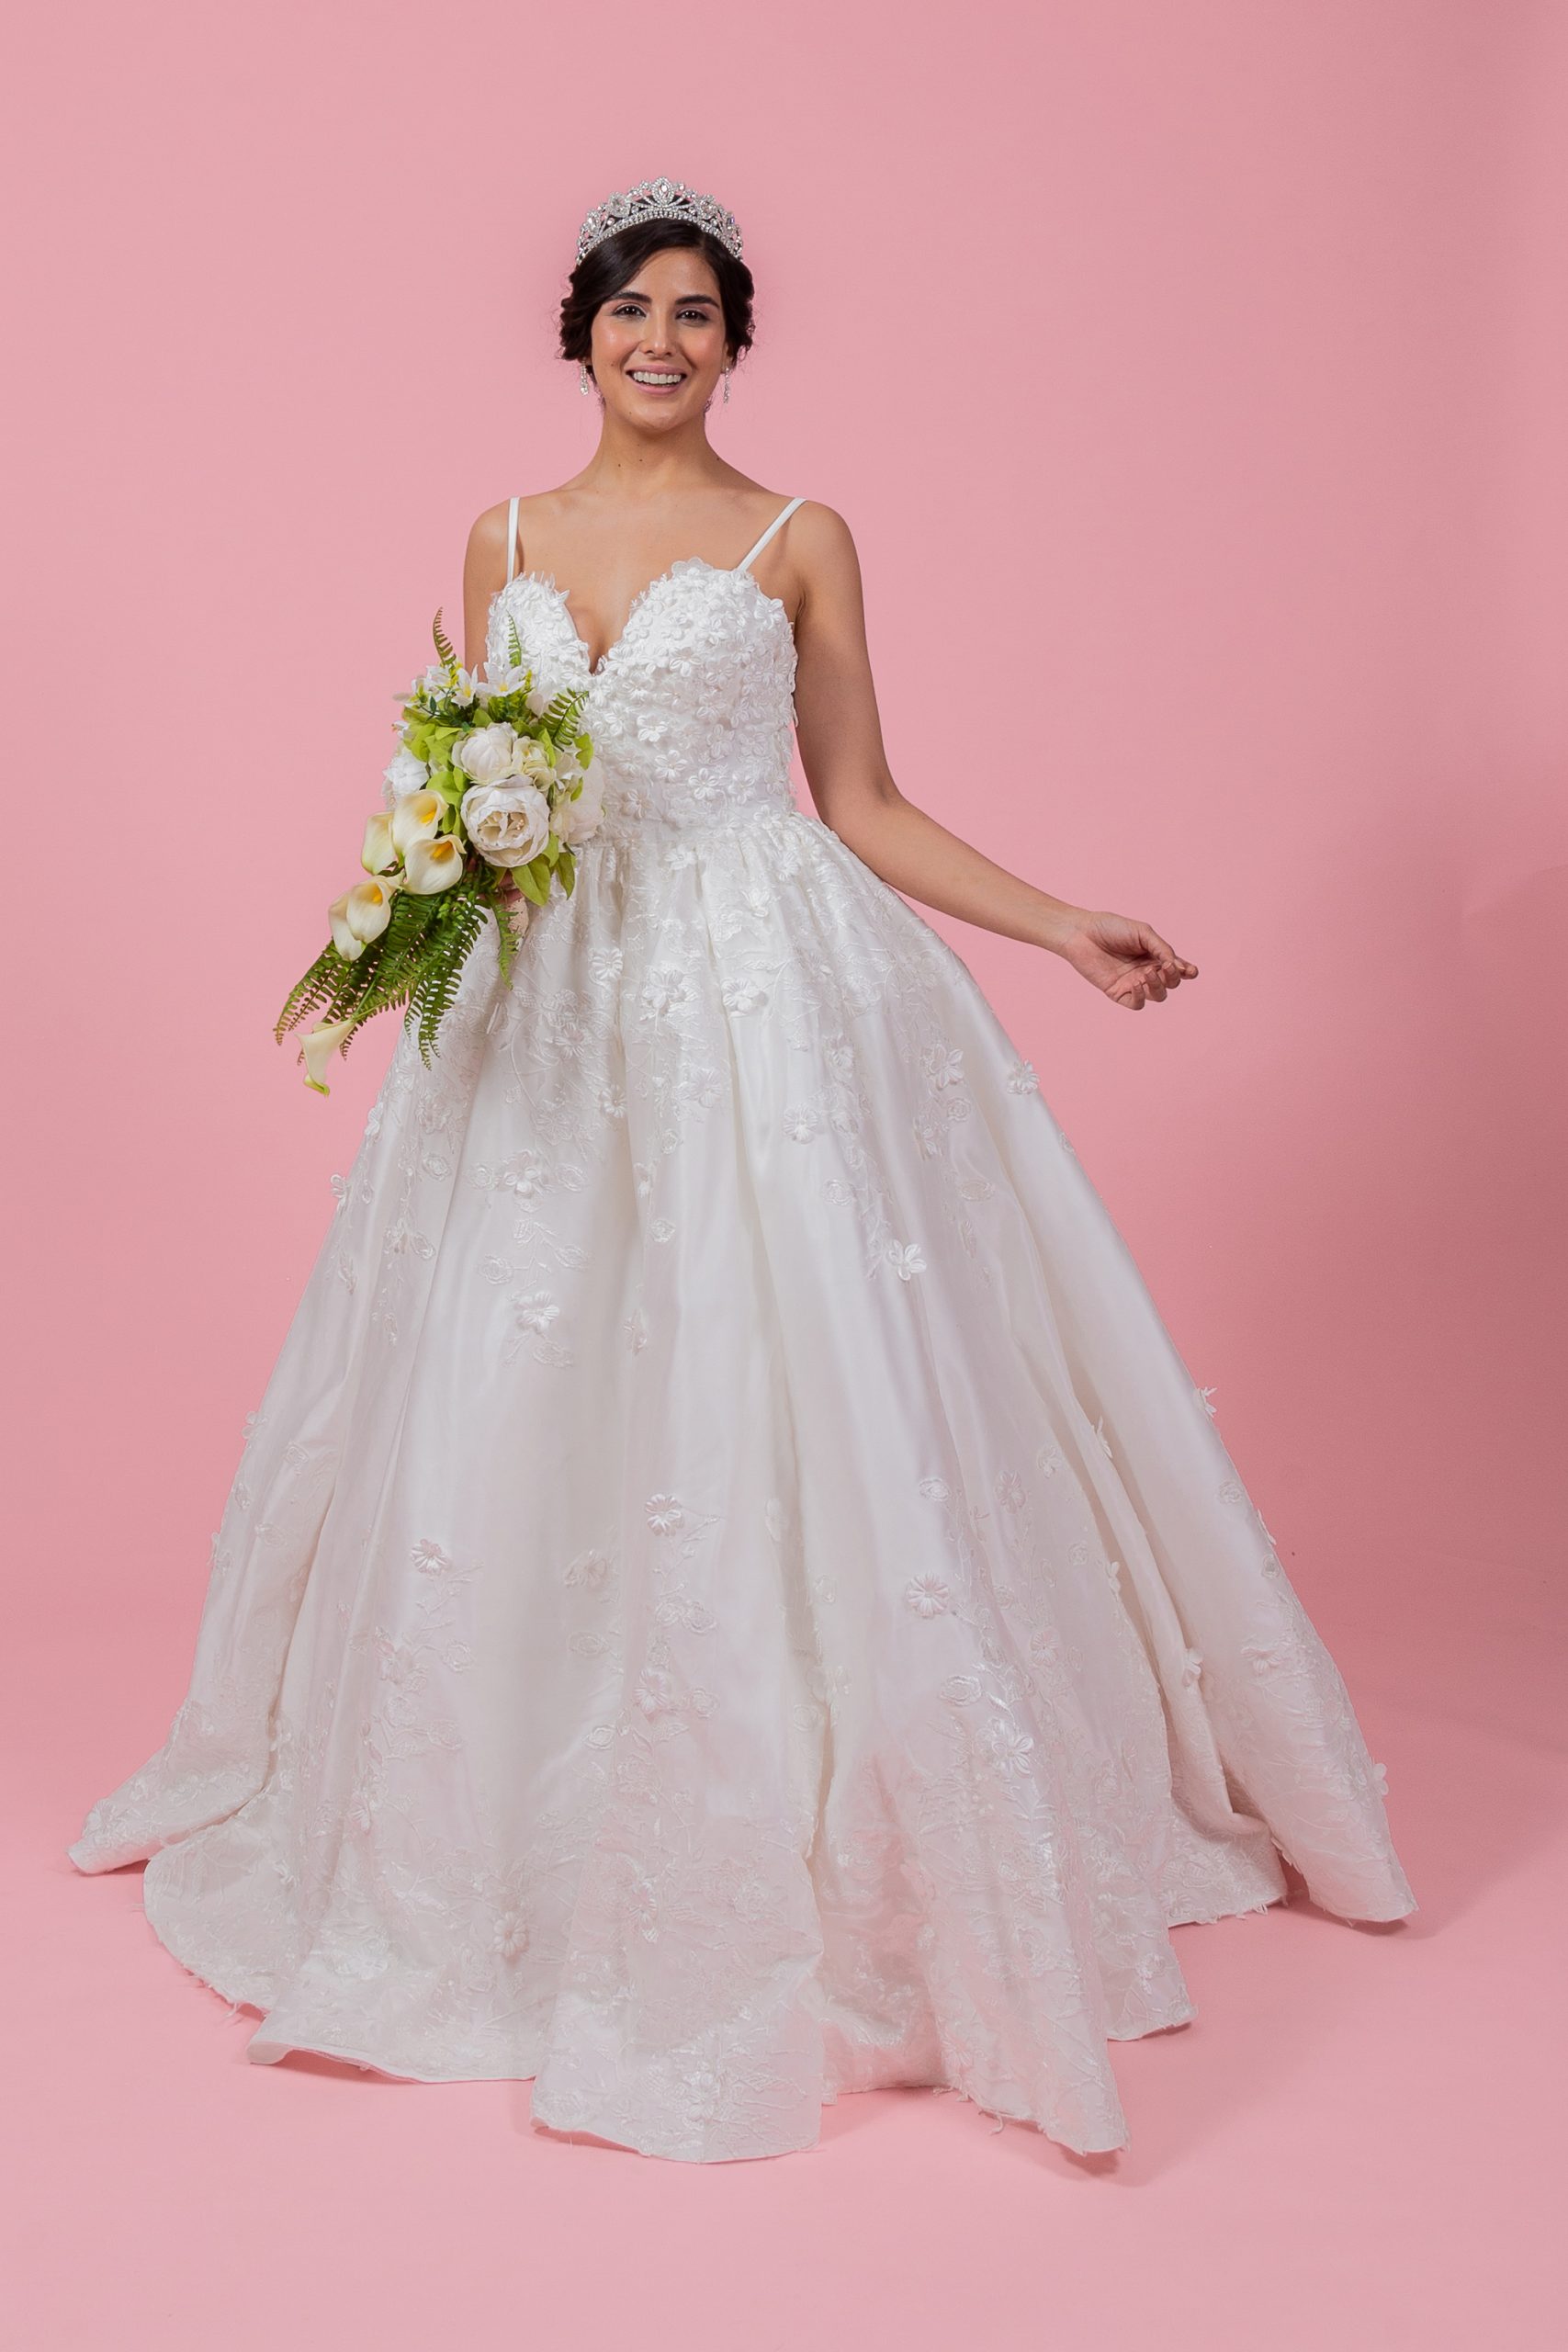 Vestido de novia blanco largo flores en 3D encaje vintage y tirantes delicados. Talla 8